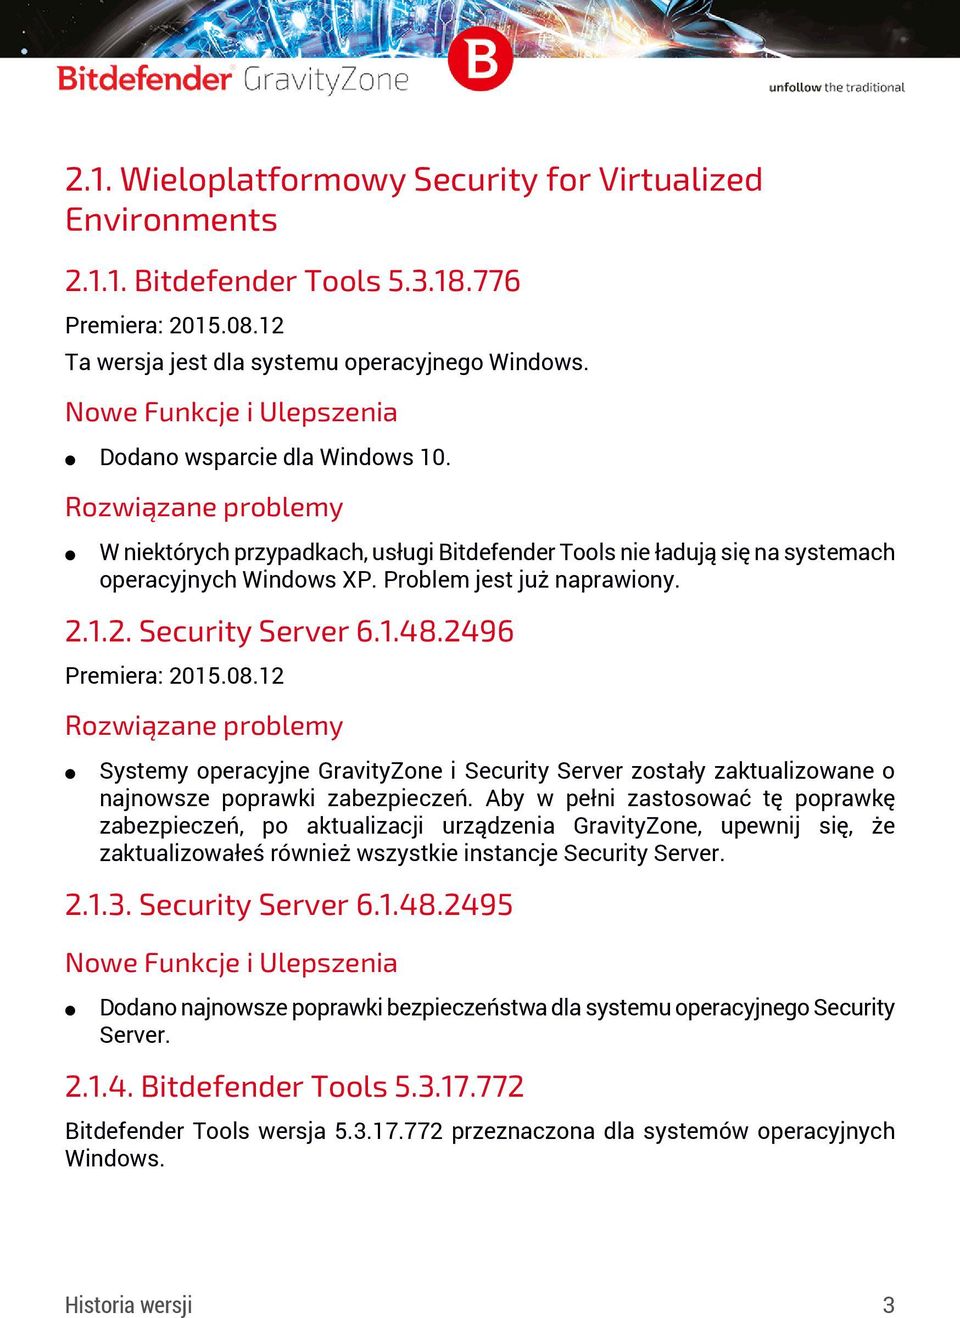 12 Systemy operacyjne GravityZone i Security Server zostały zaktualizowane o najnowsze poprawki zabezpieczeń.